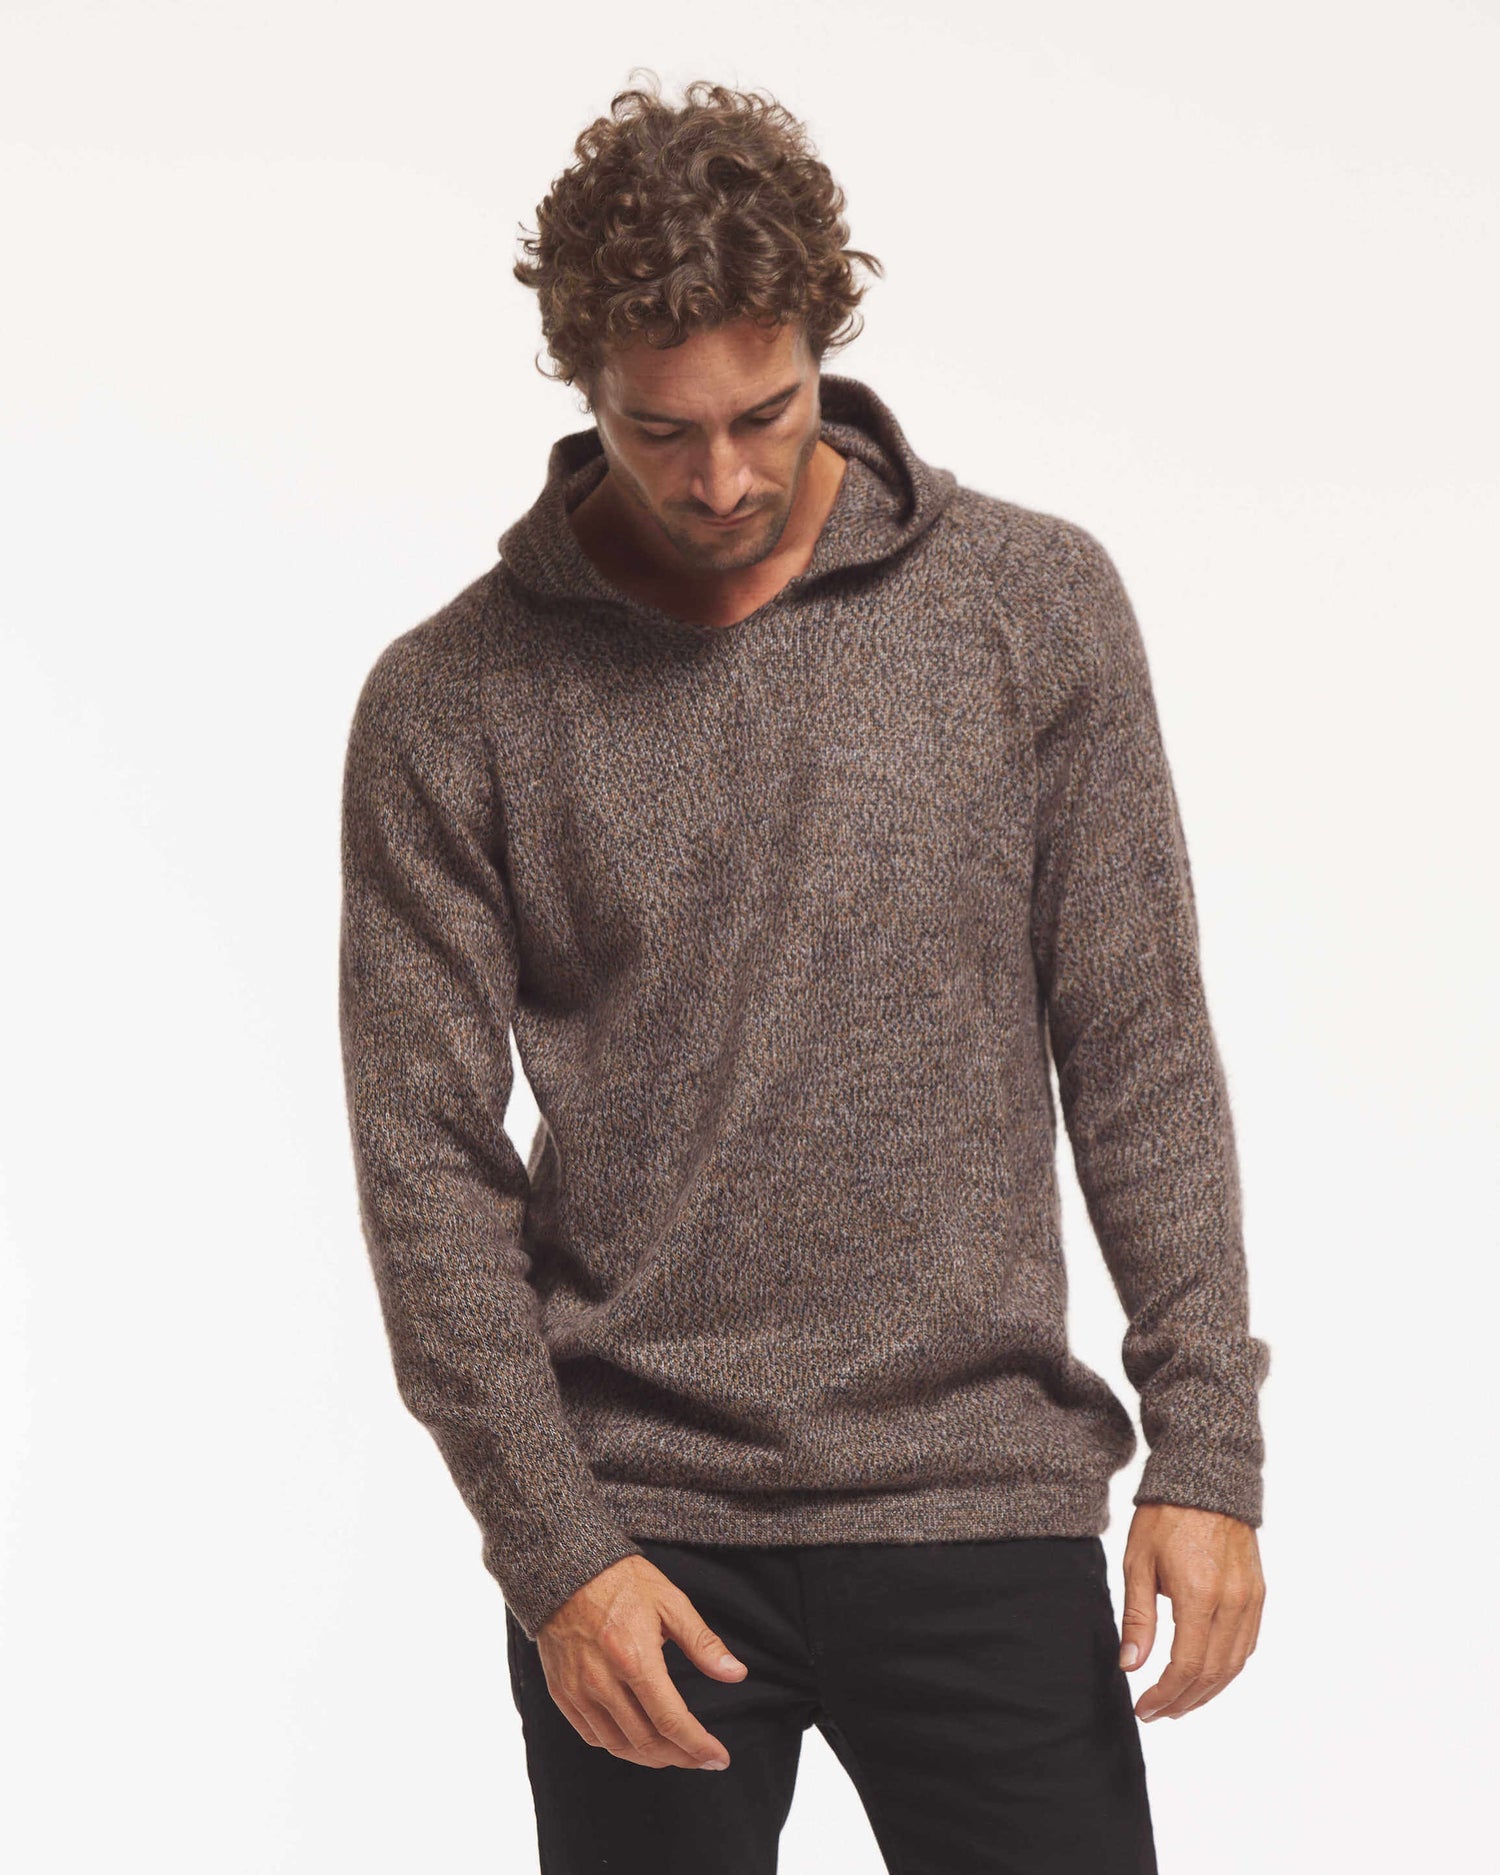 Alpaca hoodie sweater on model